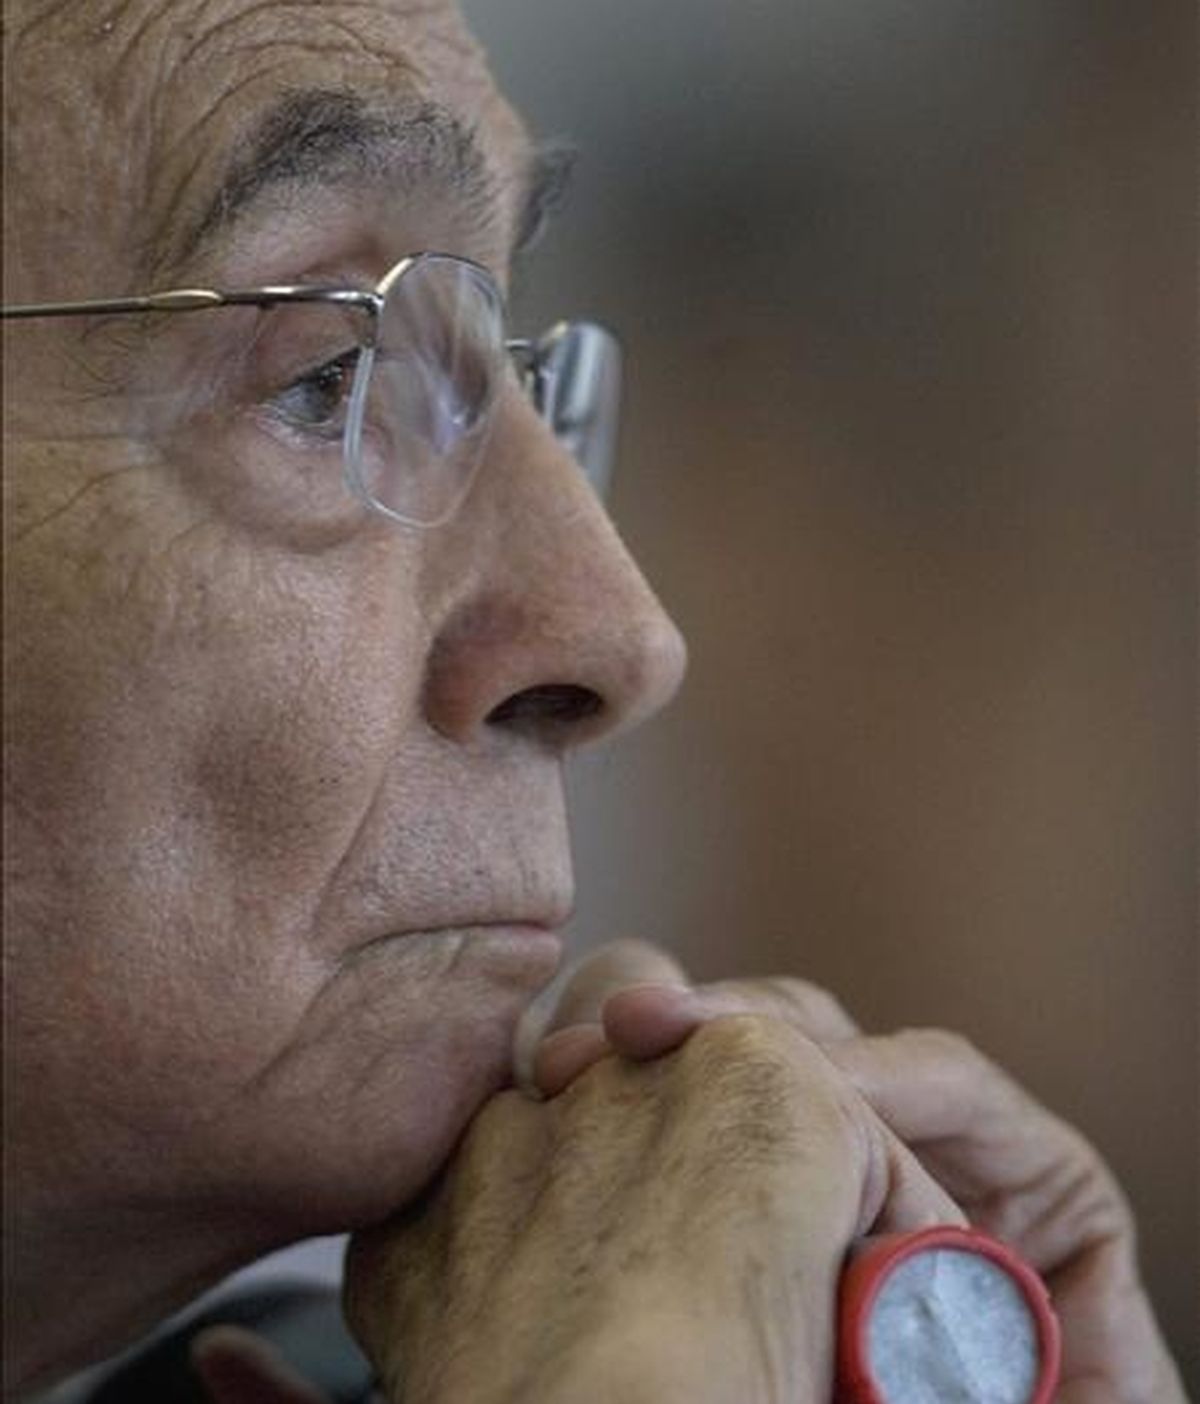 El festival contempla un emotivo homenaje al fallecido Nobel portugués, José Saramago, cuyos últimos días se mostrarán en la película "José & Pilar". EFE/Archivo